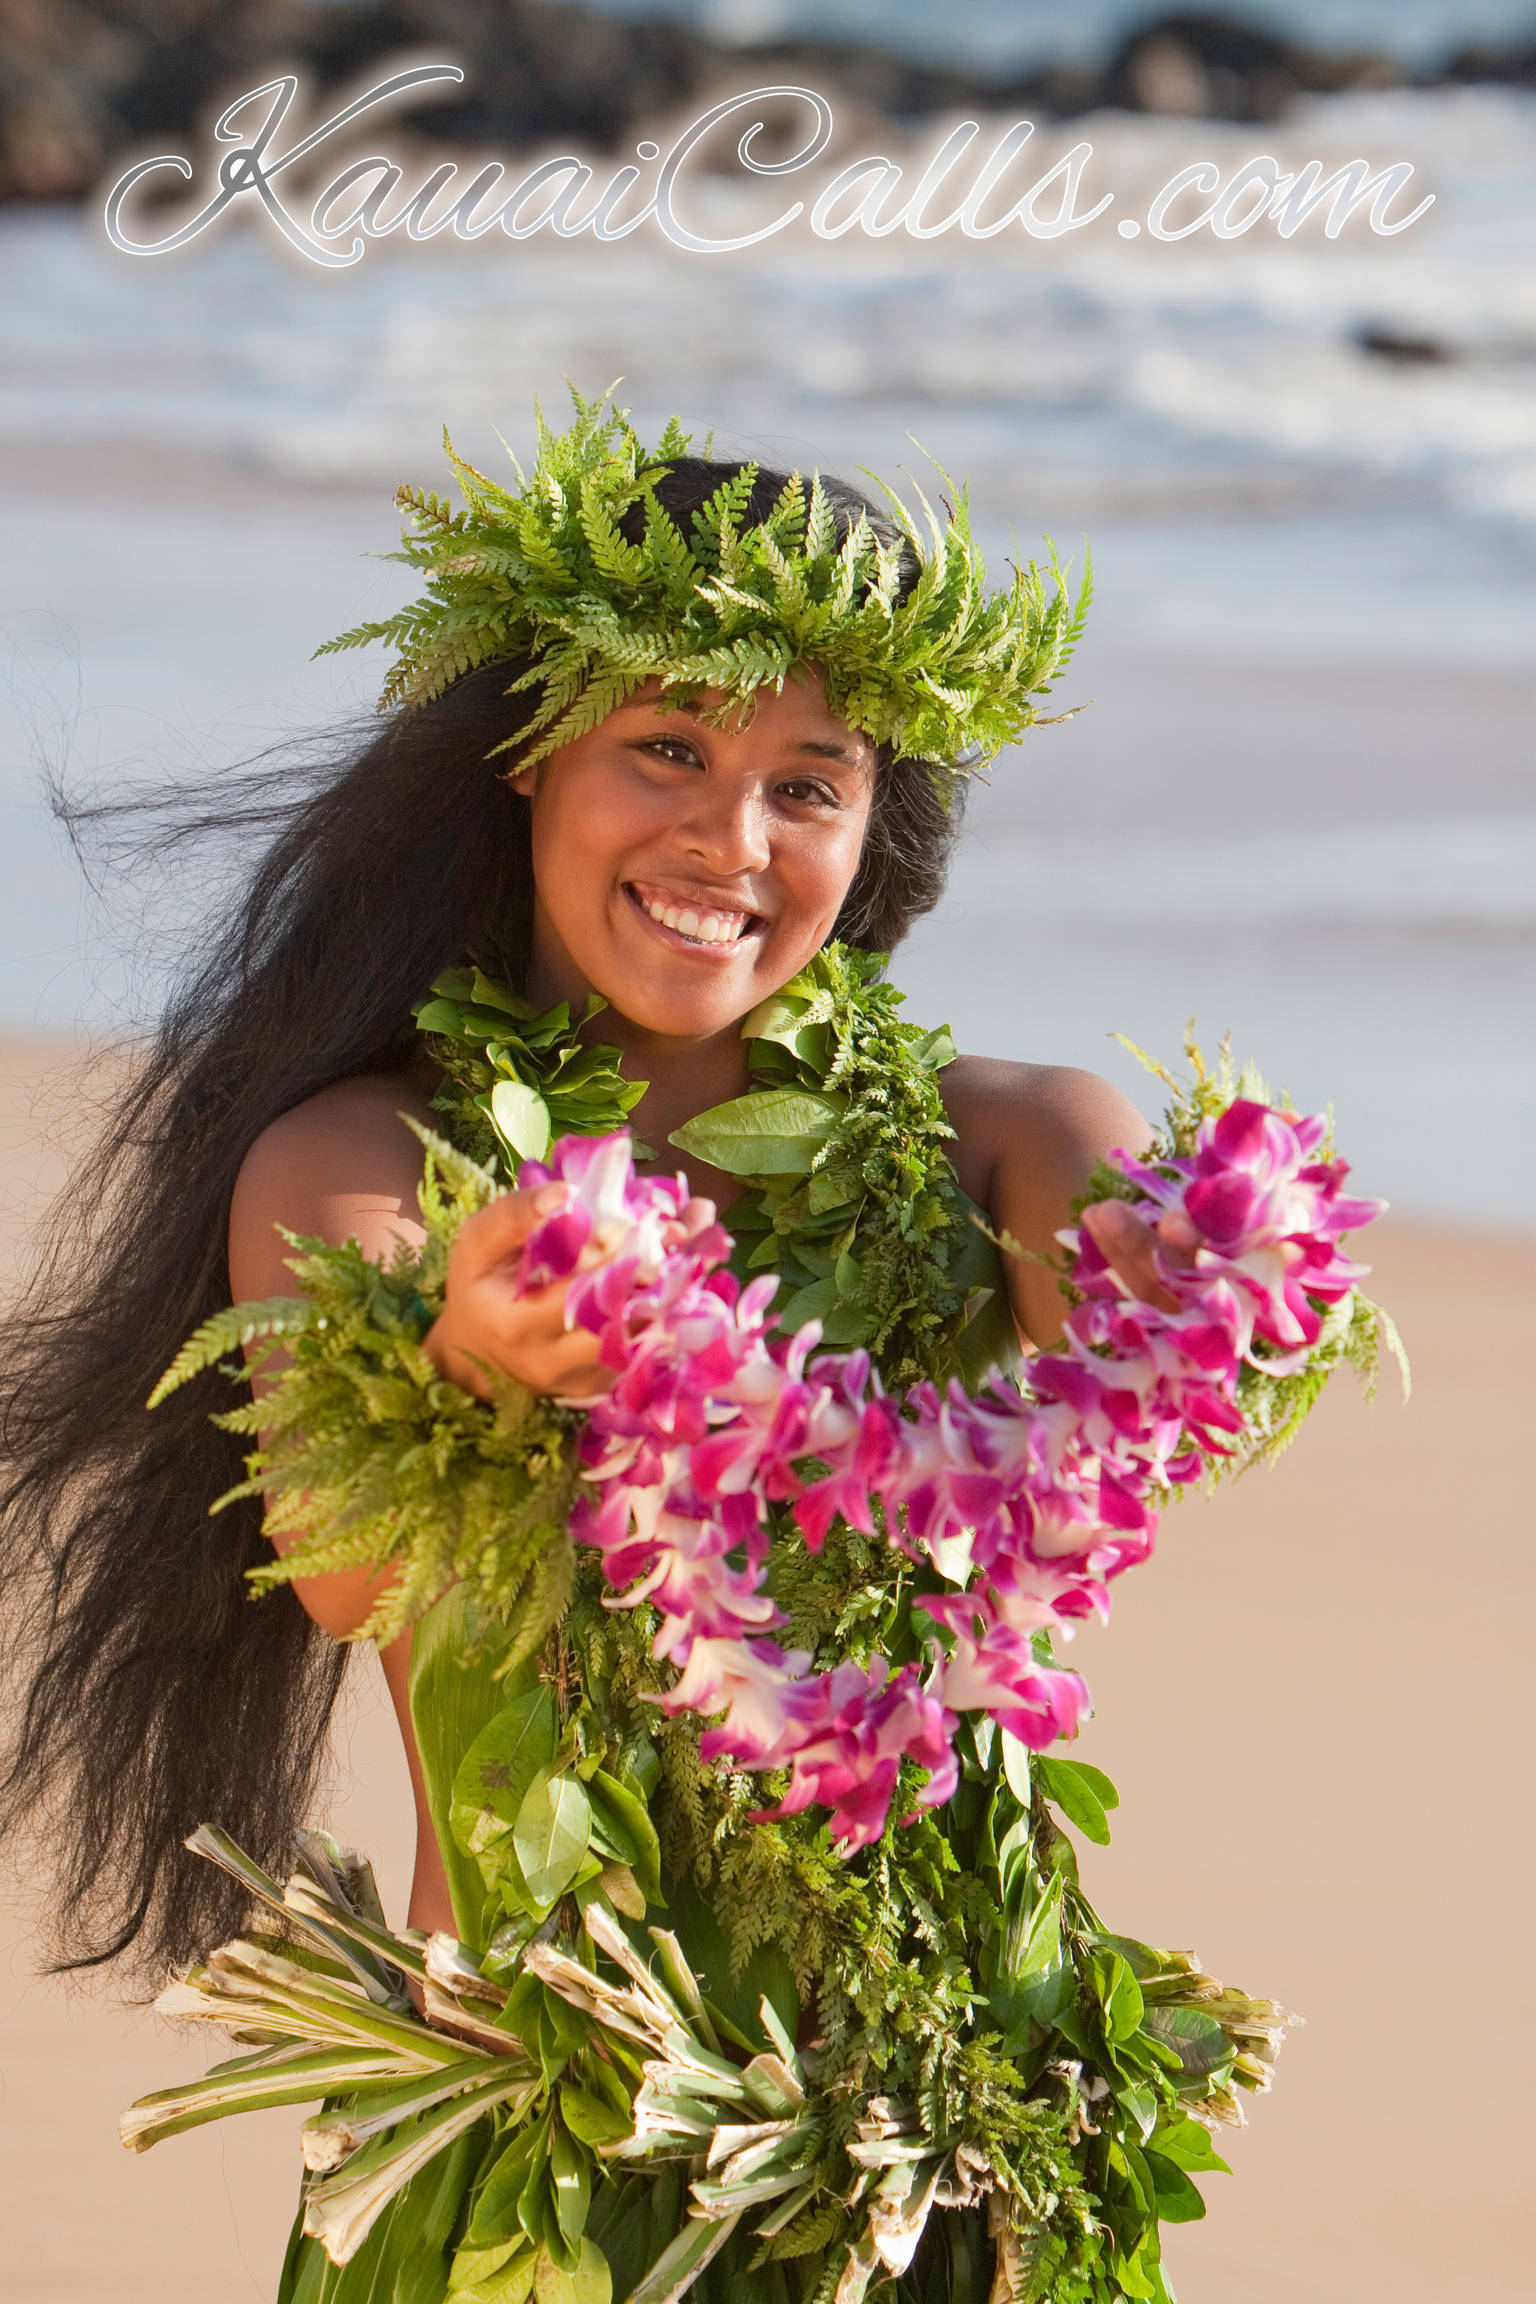 Kauai Calls Set Your Heart Free